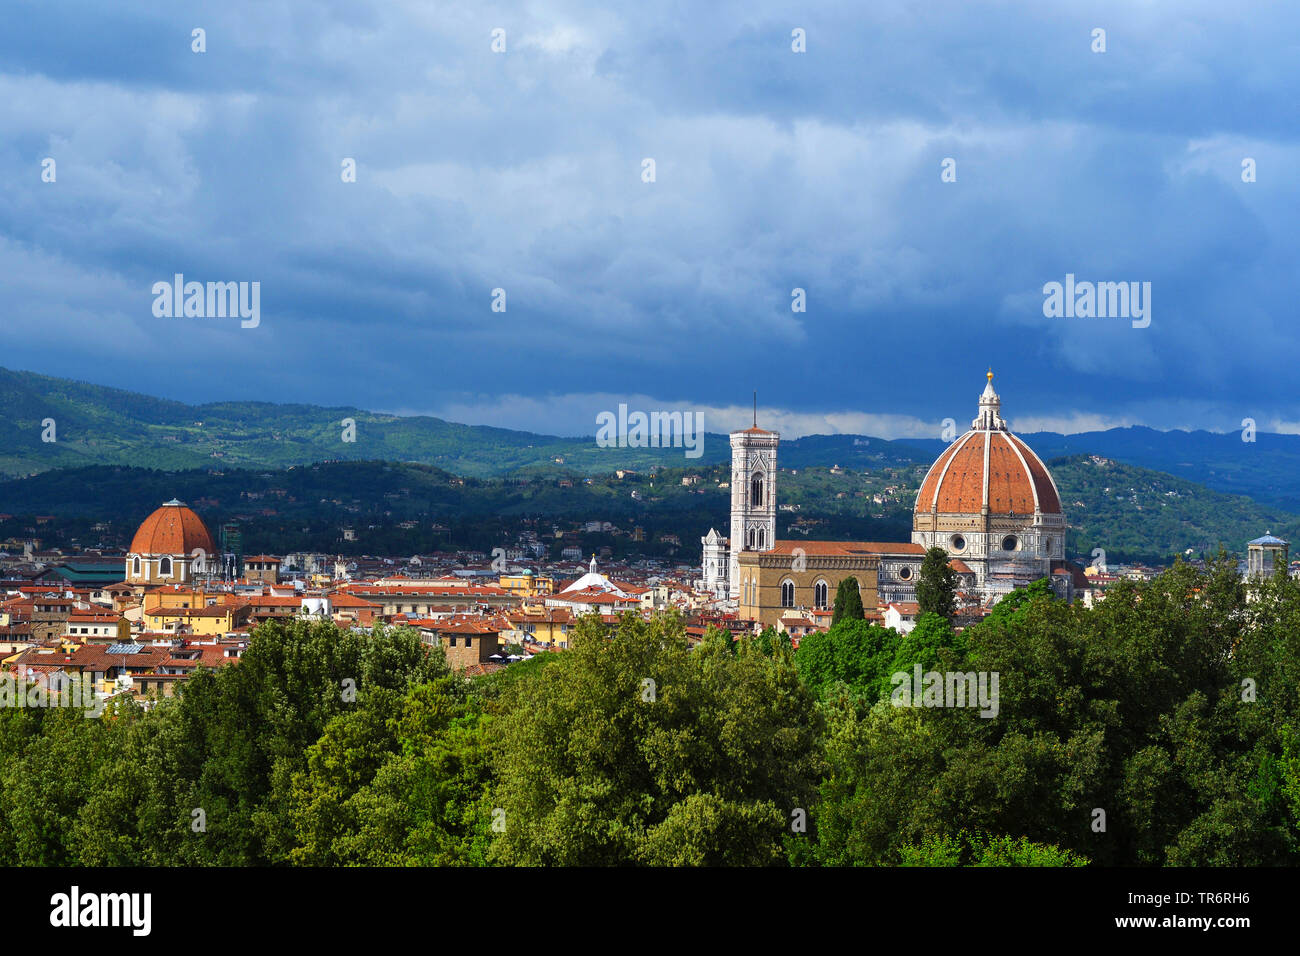 Vue depuis le jardin de Boboli de la cathédrale de Florence et du Campanile de Giotto, Italie, Florence Banque D'Images